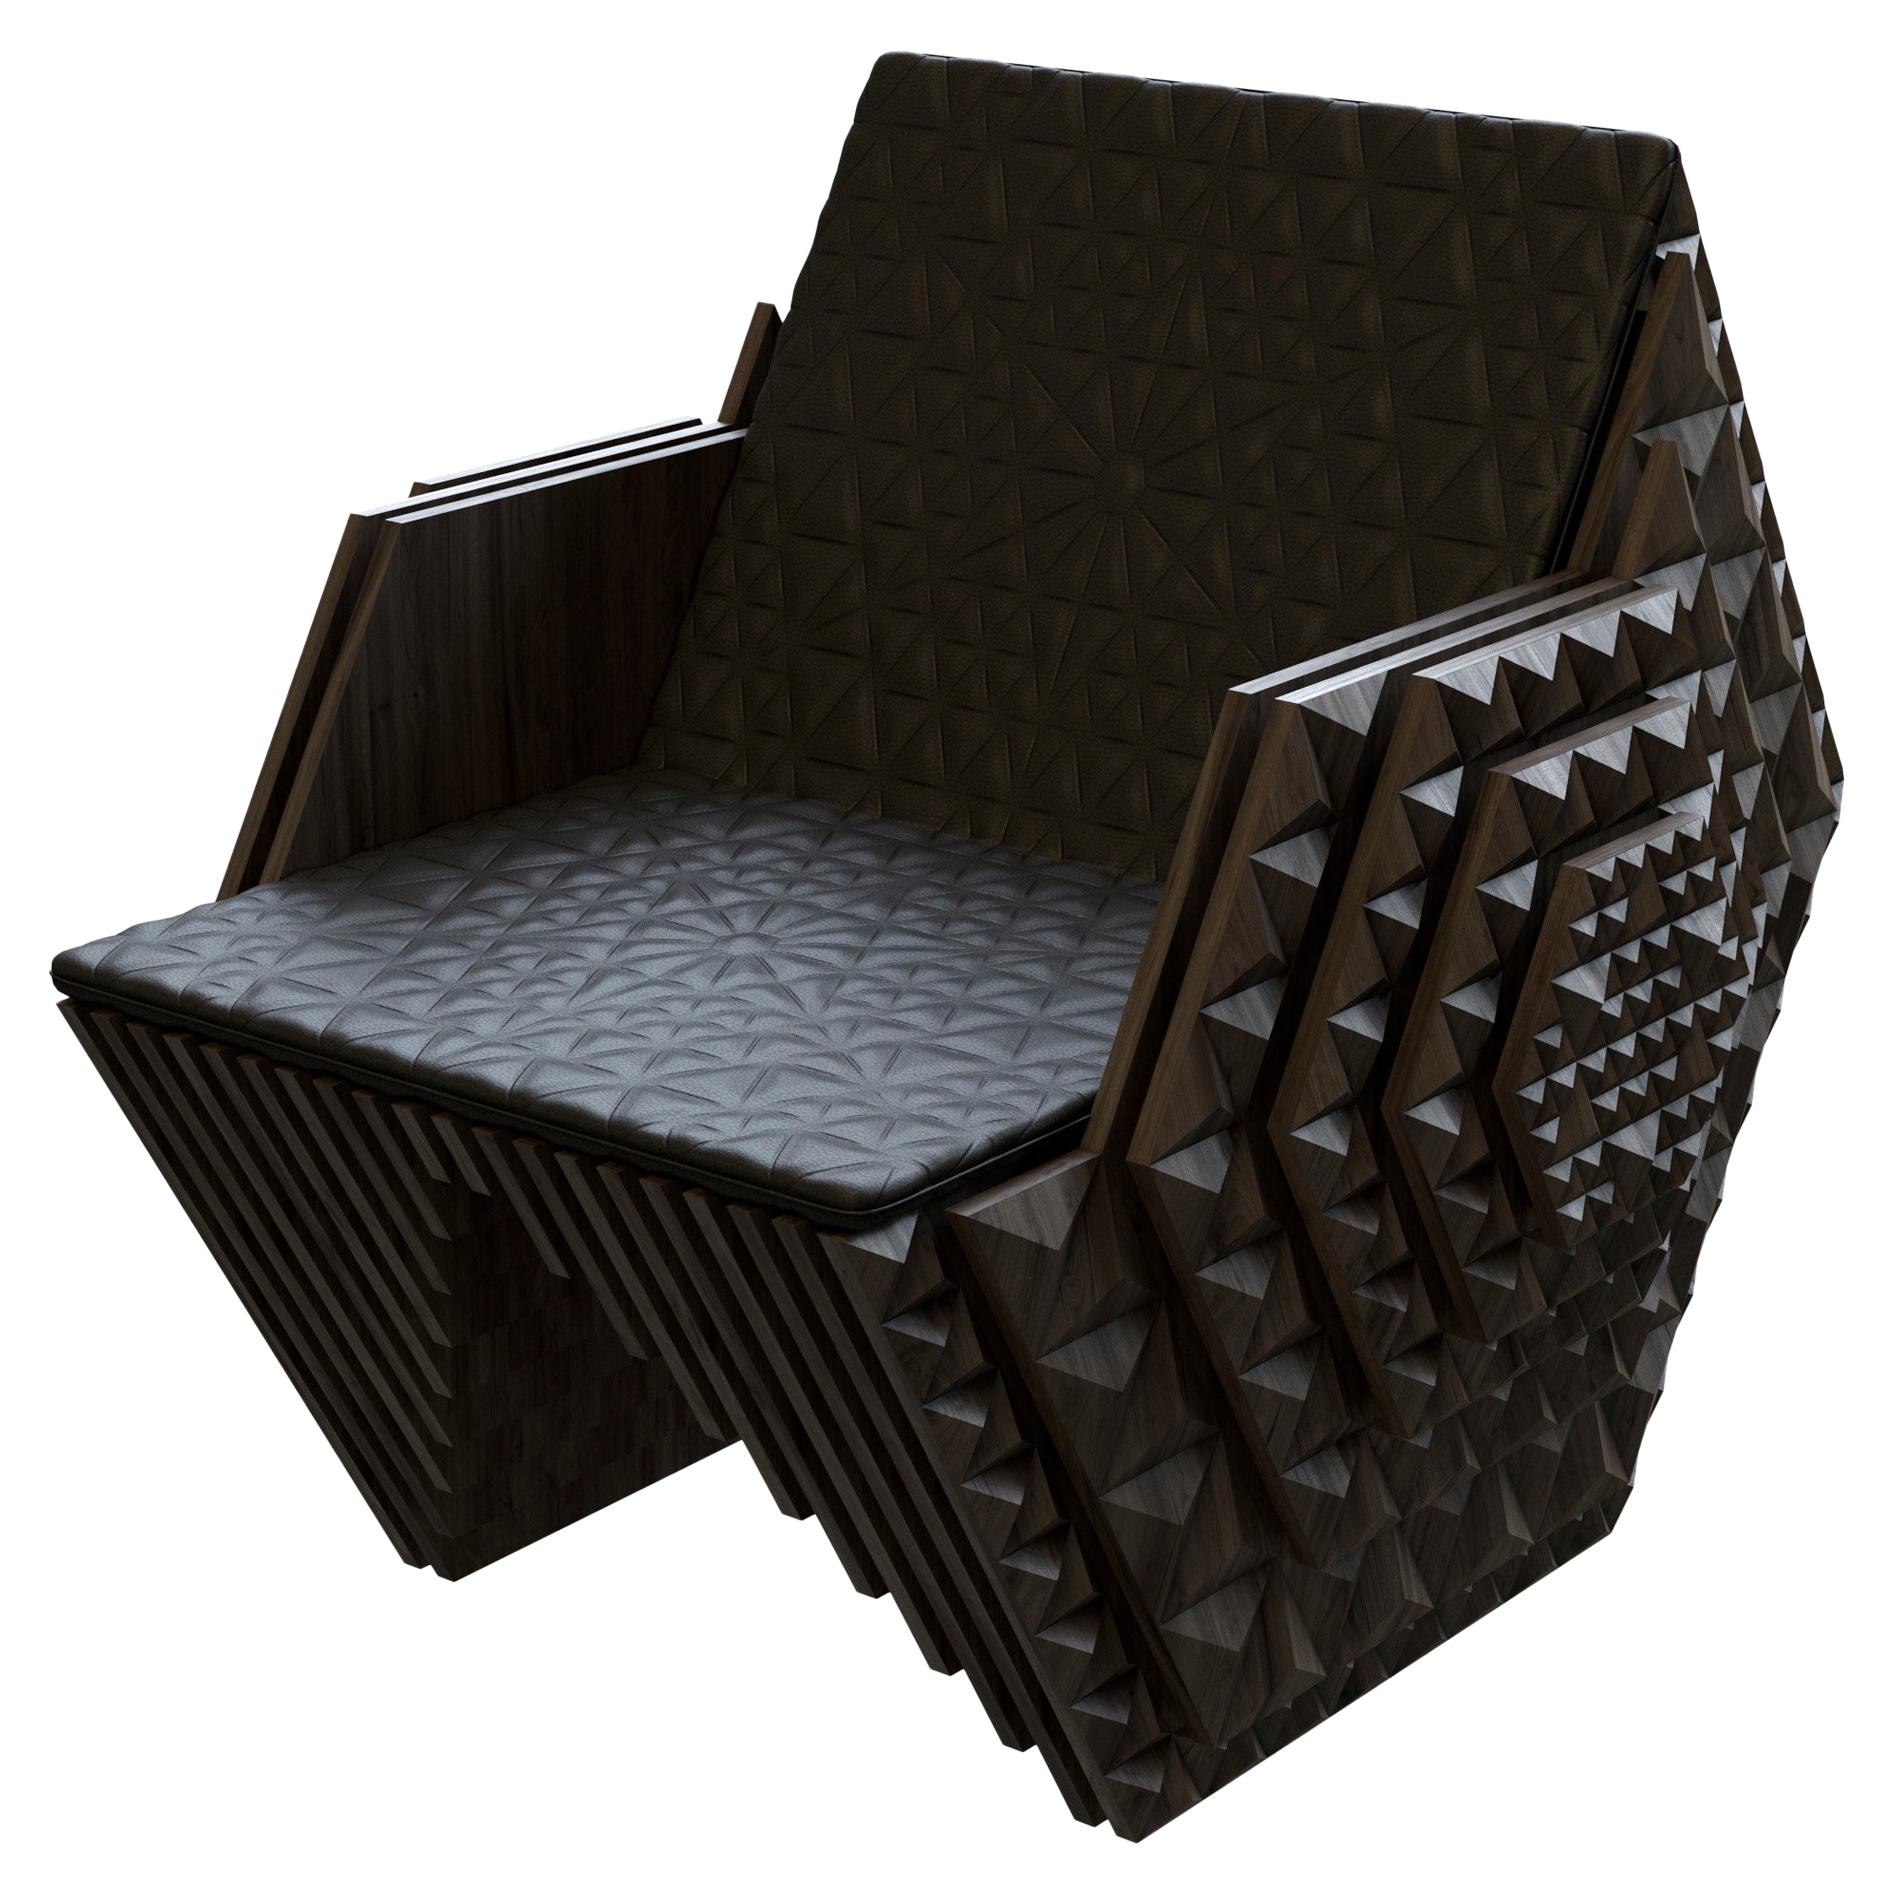 Ce trône viking est une pièce d'art faite à la main, en édition limitée, en bois de teck massif. Cette pièce est créée dans un ensemble de 20 et peut être personnalisée pour répondre à vos besoins. Le design a été créé à l'aide d'un outil